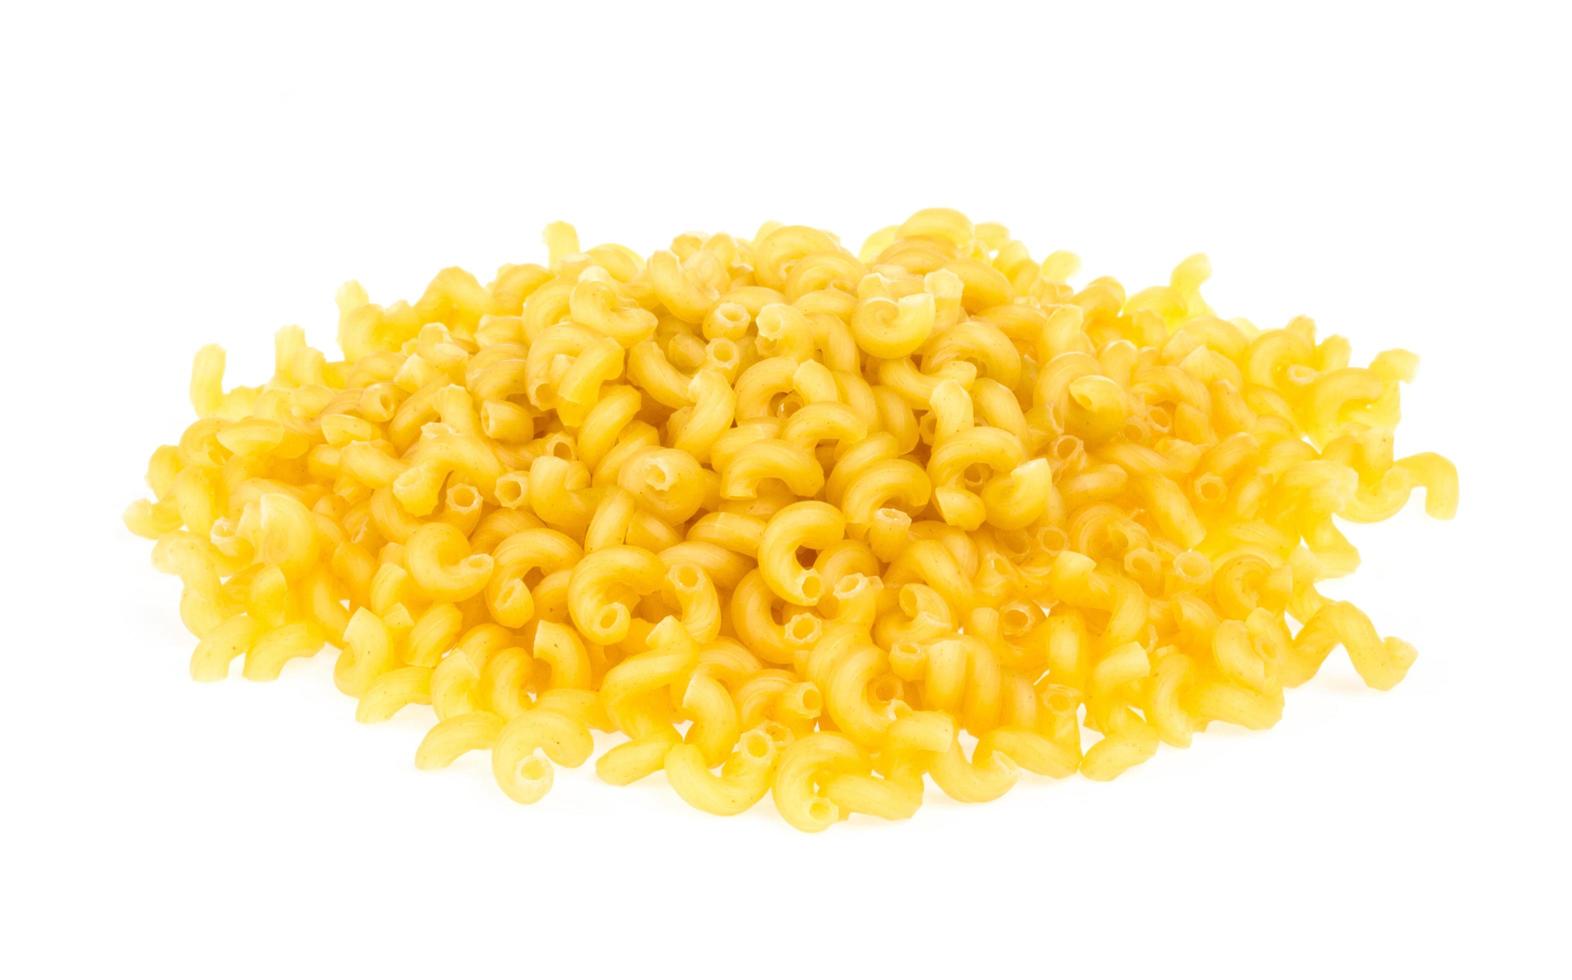 italian pasta macaroni isolated on white background photo